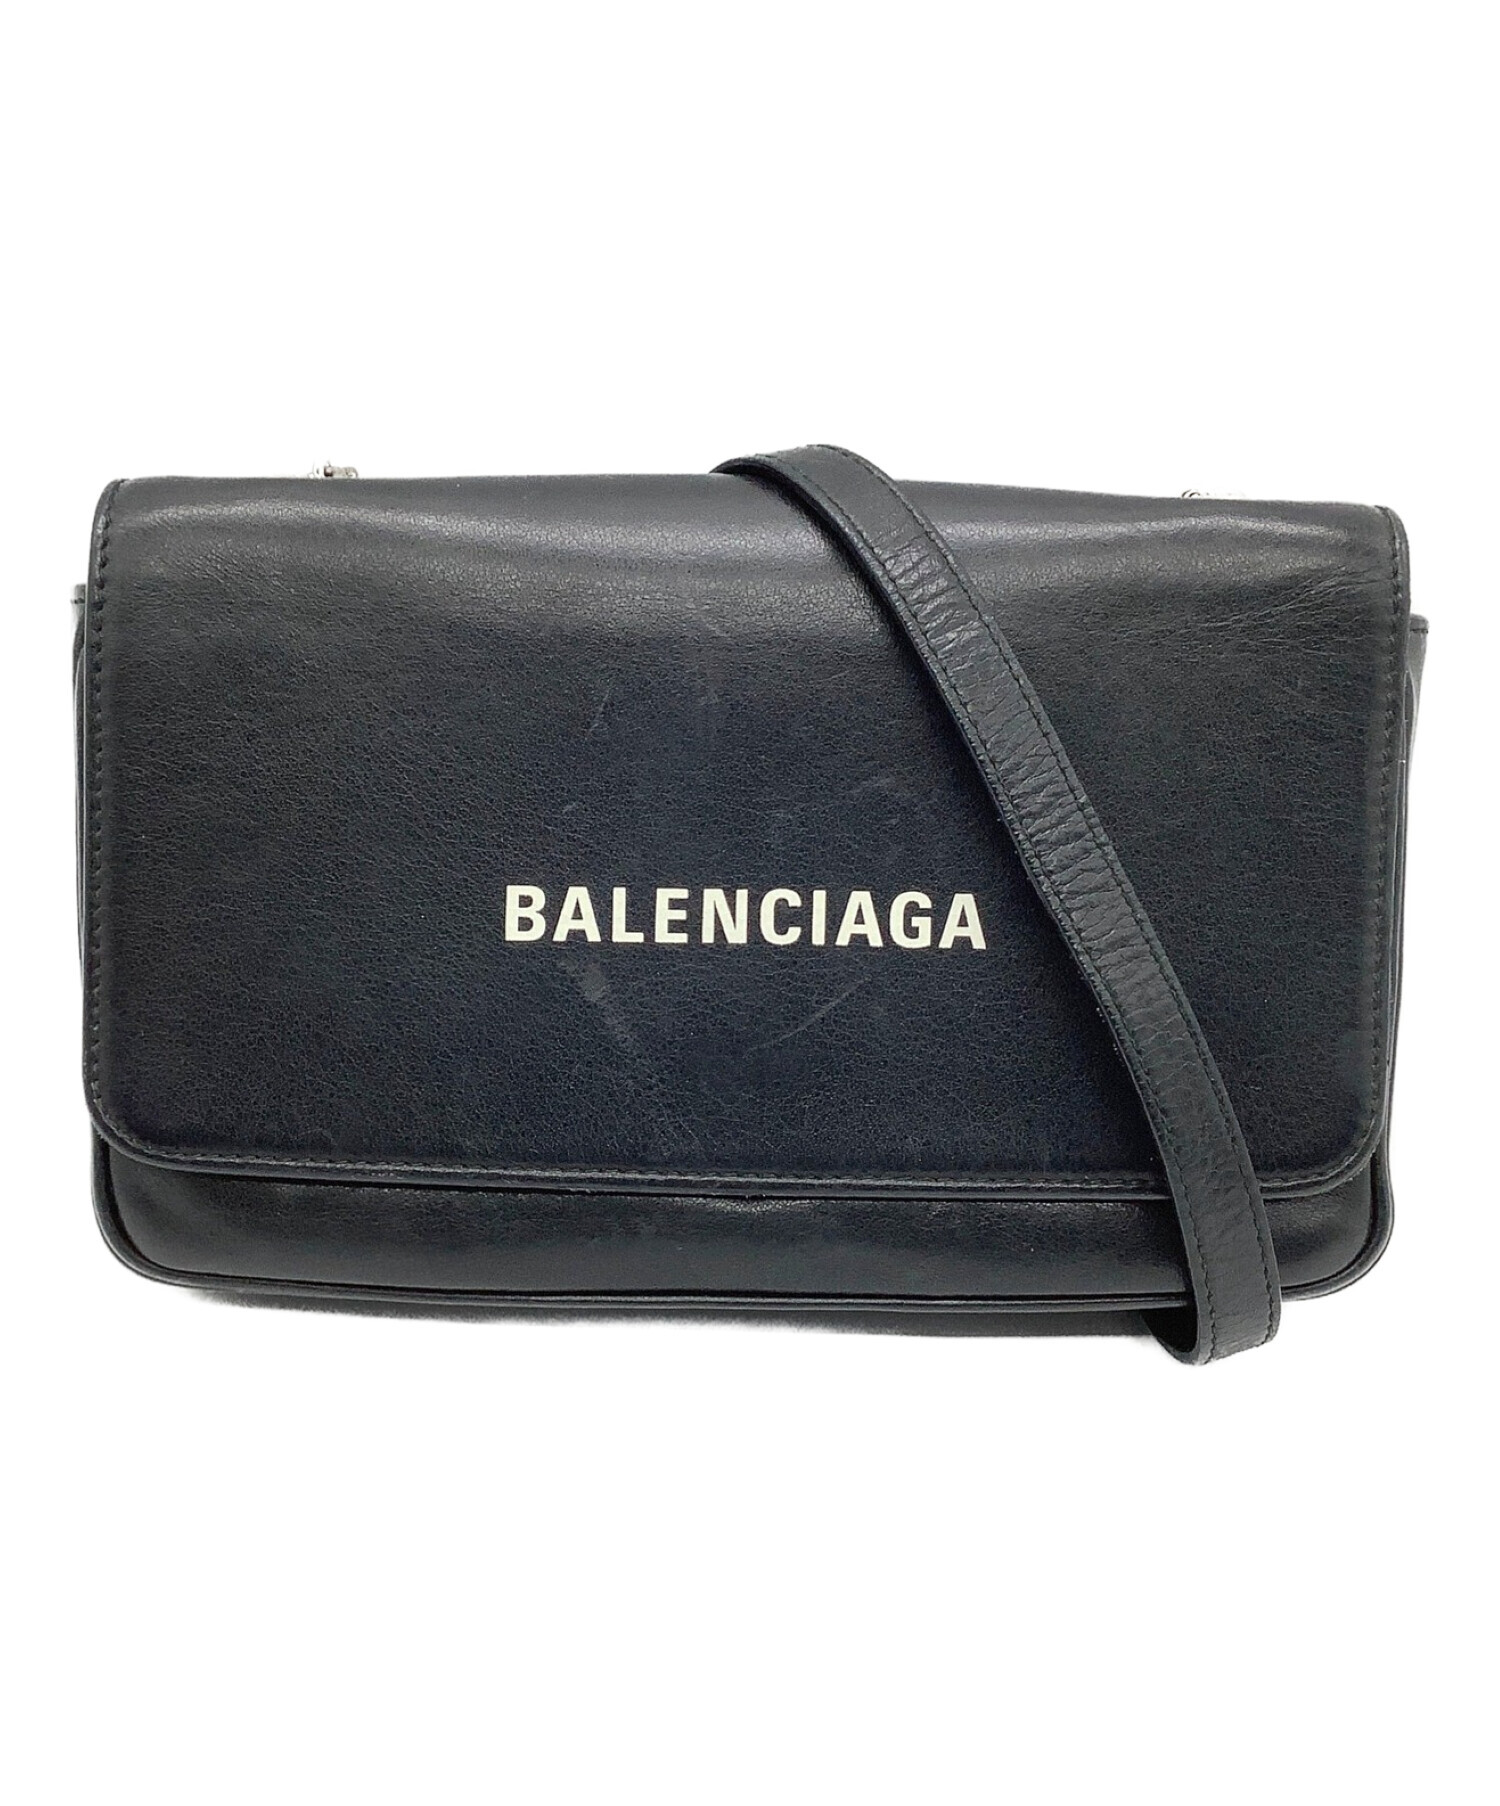 BALENCIAGA (バレンシアガ) チェーンショルダーバッグ ブラック